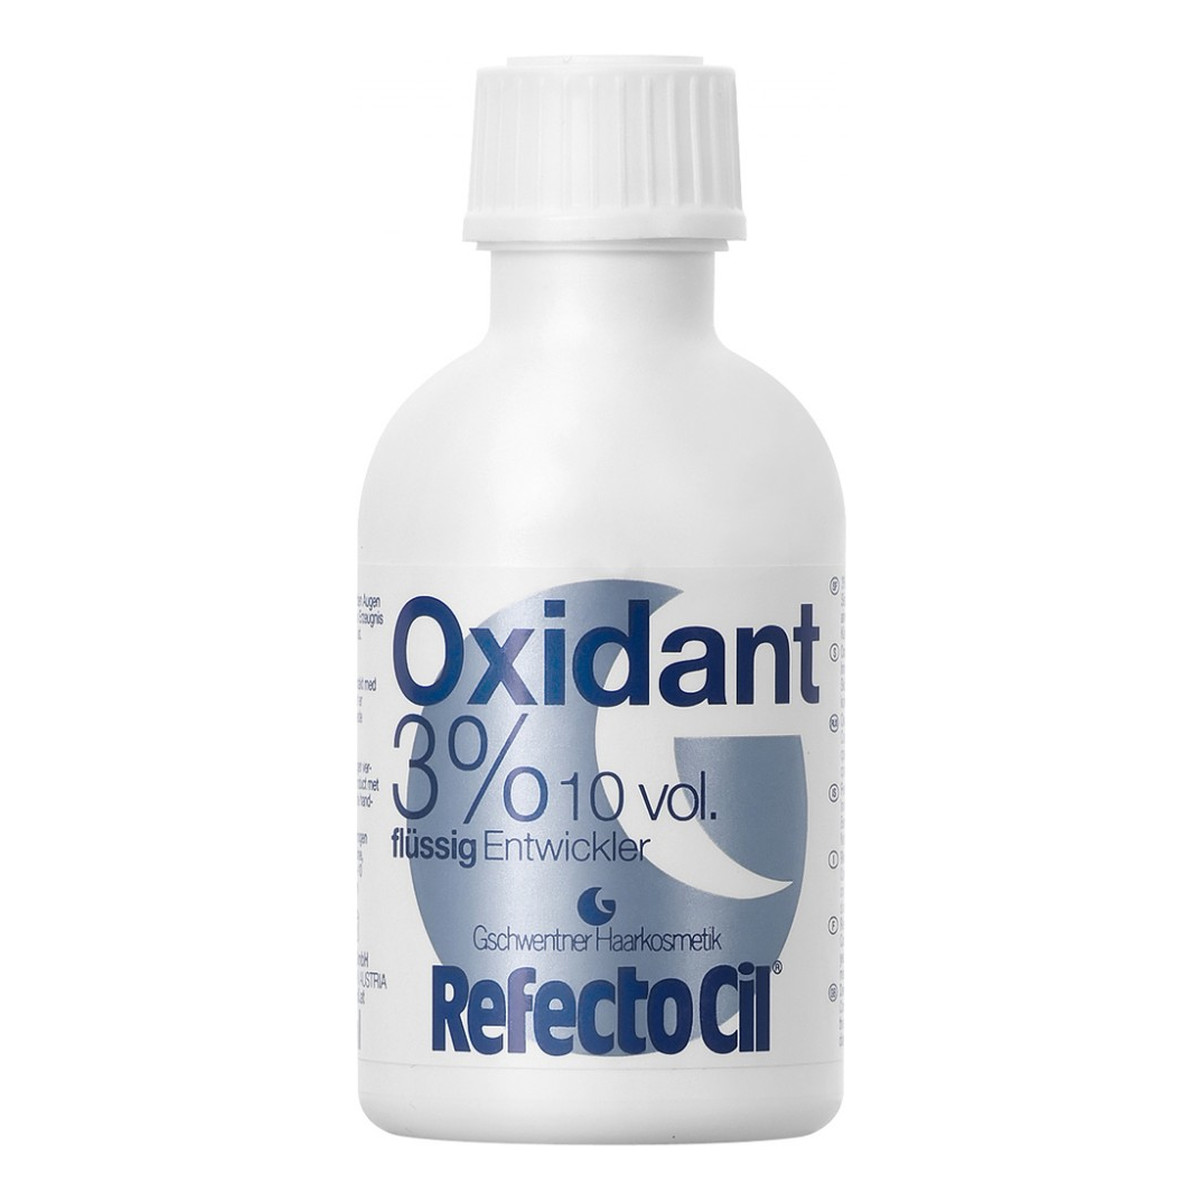 RefectoCil Liquid 3% Oxidant Woda Utleniona W Płynie 50ml